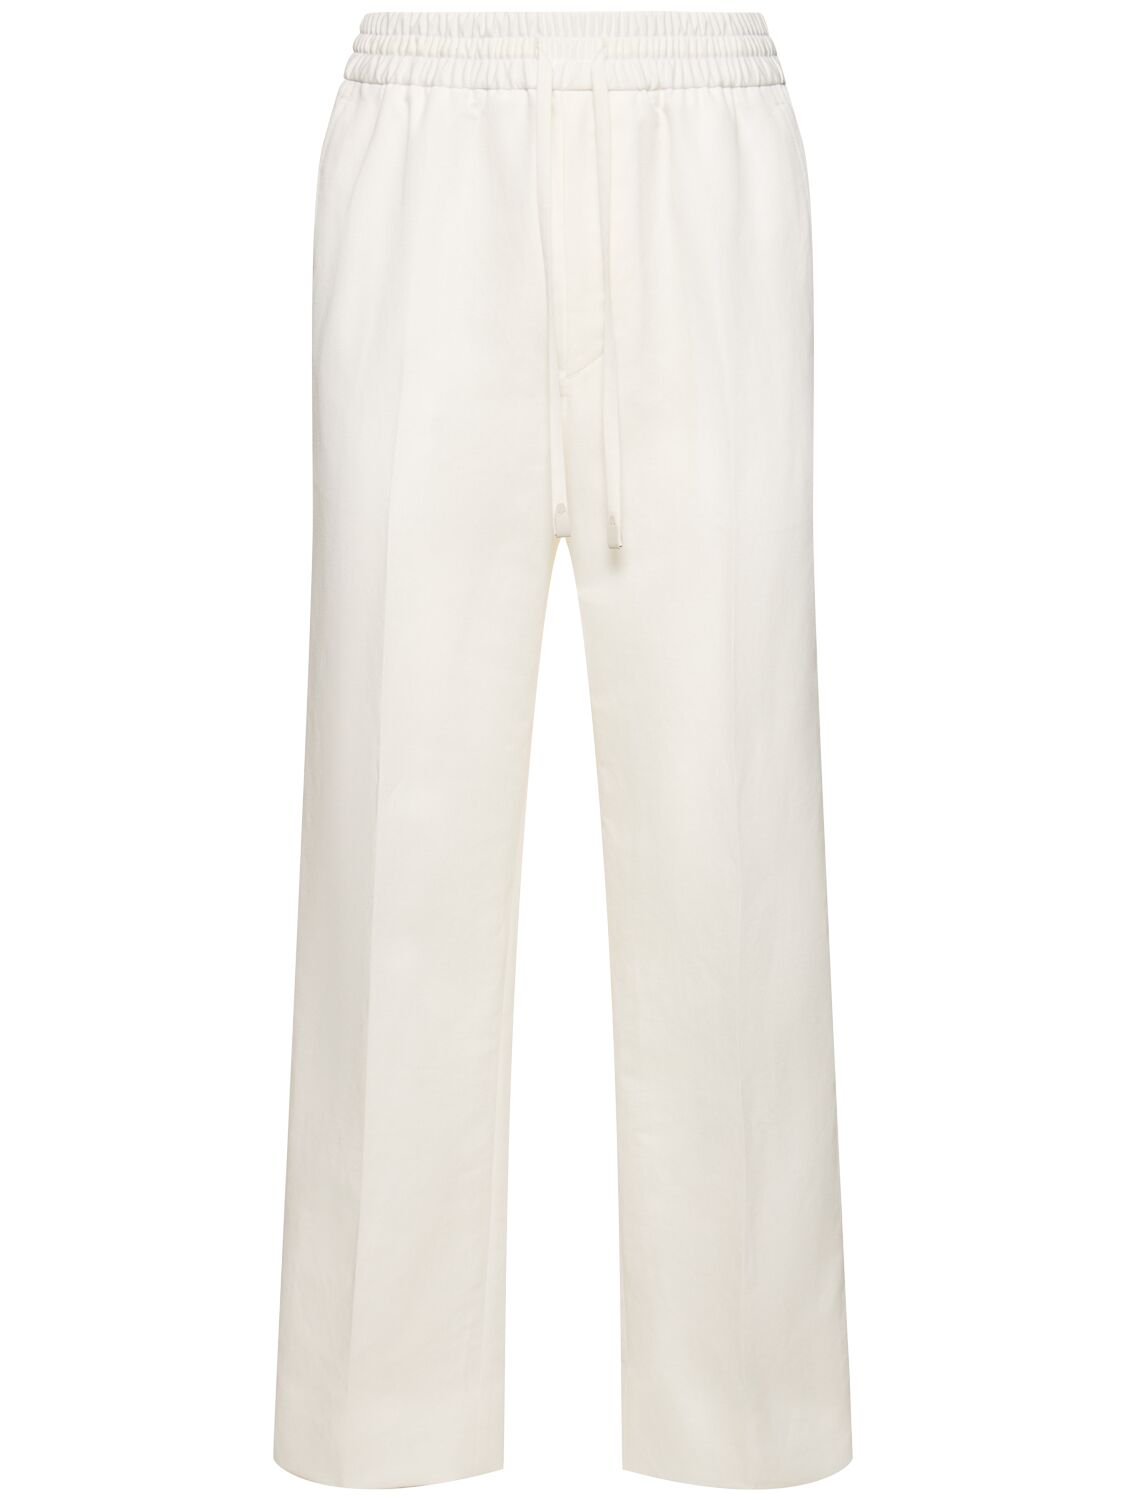 Image of Asolo Cotton & Linen Sweatpants